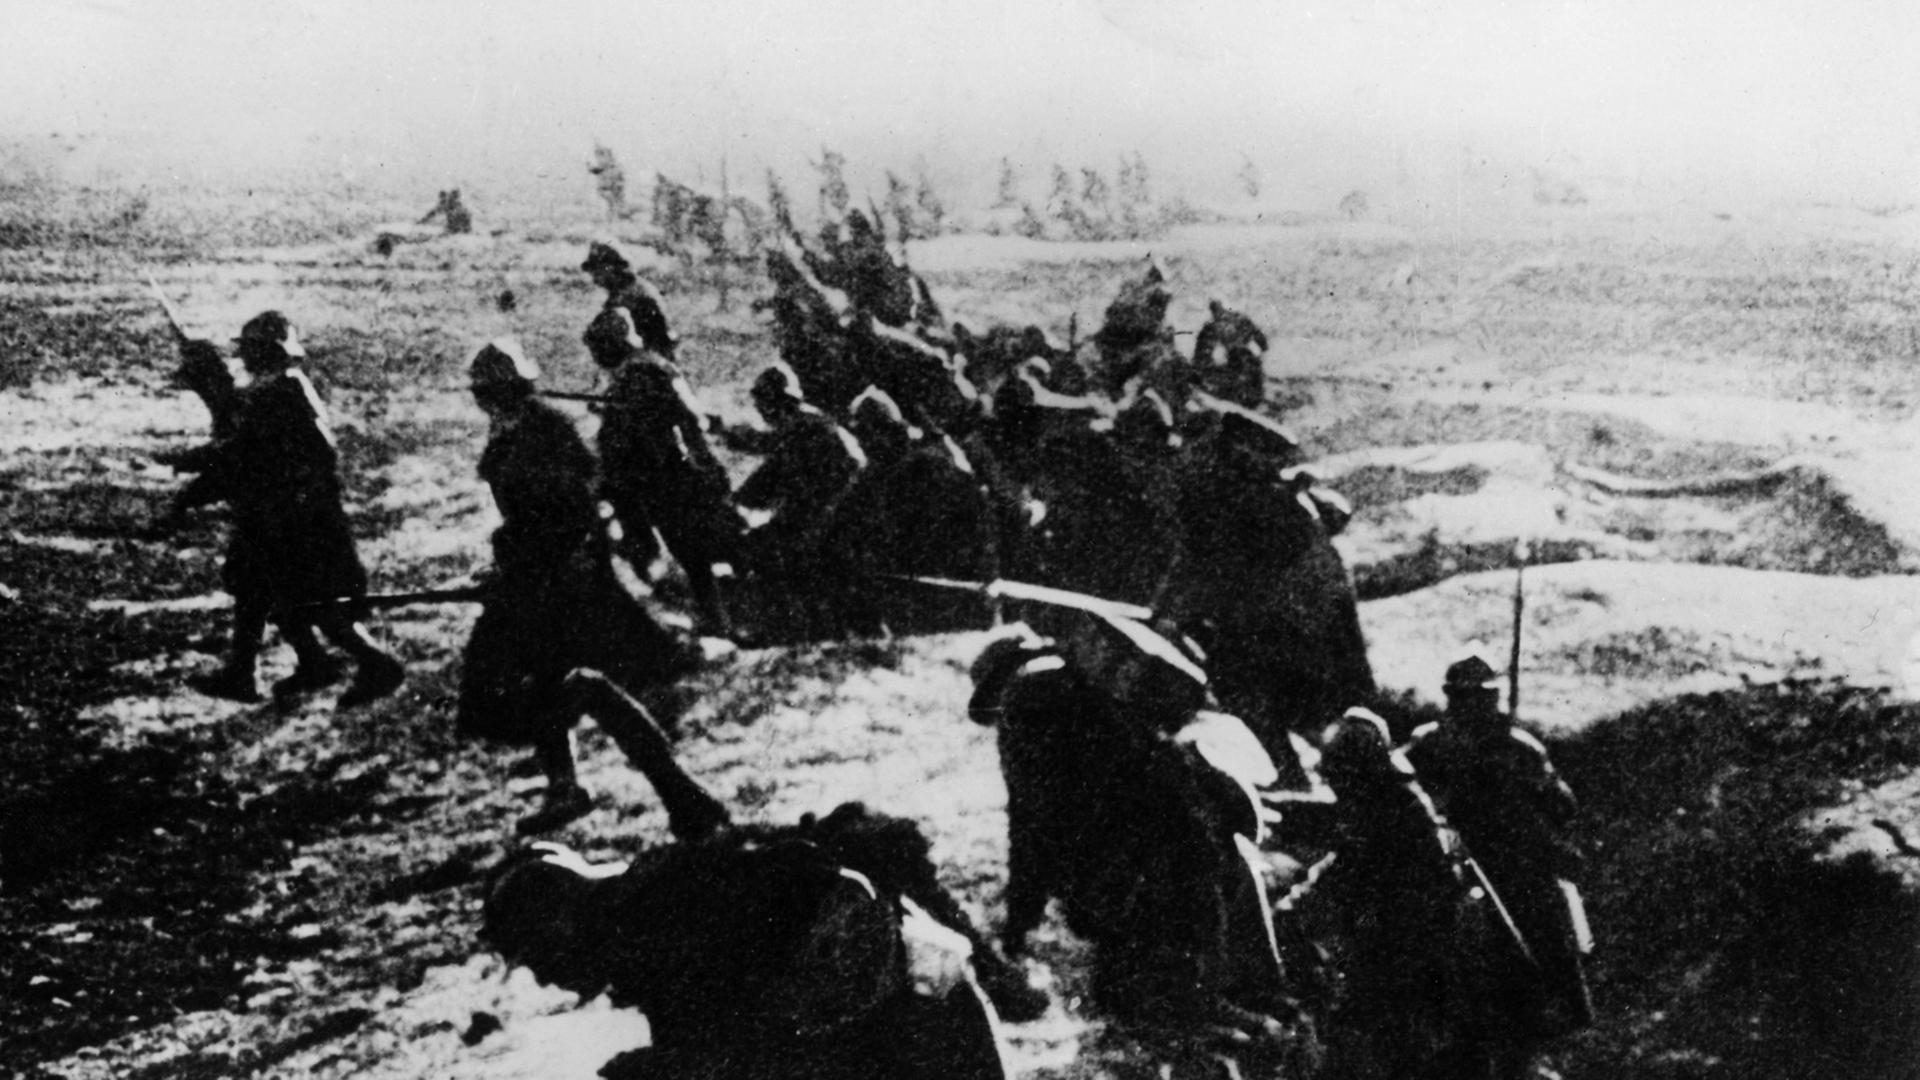 Schlacht um Verdun: Französische Soldaten klettern während der Schlacht um die ostfranzösische Stadt Verdun zu einem Angriff aus ihren Schützengräben (Archivfoto von 1916).